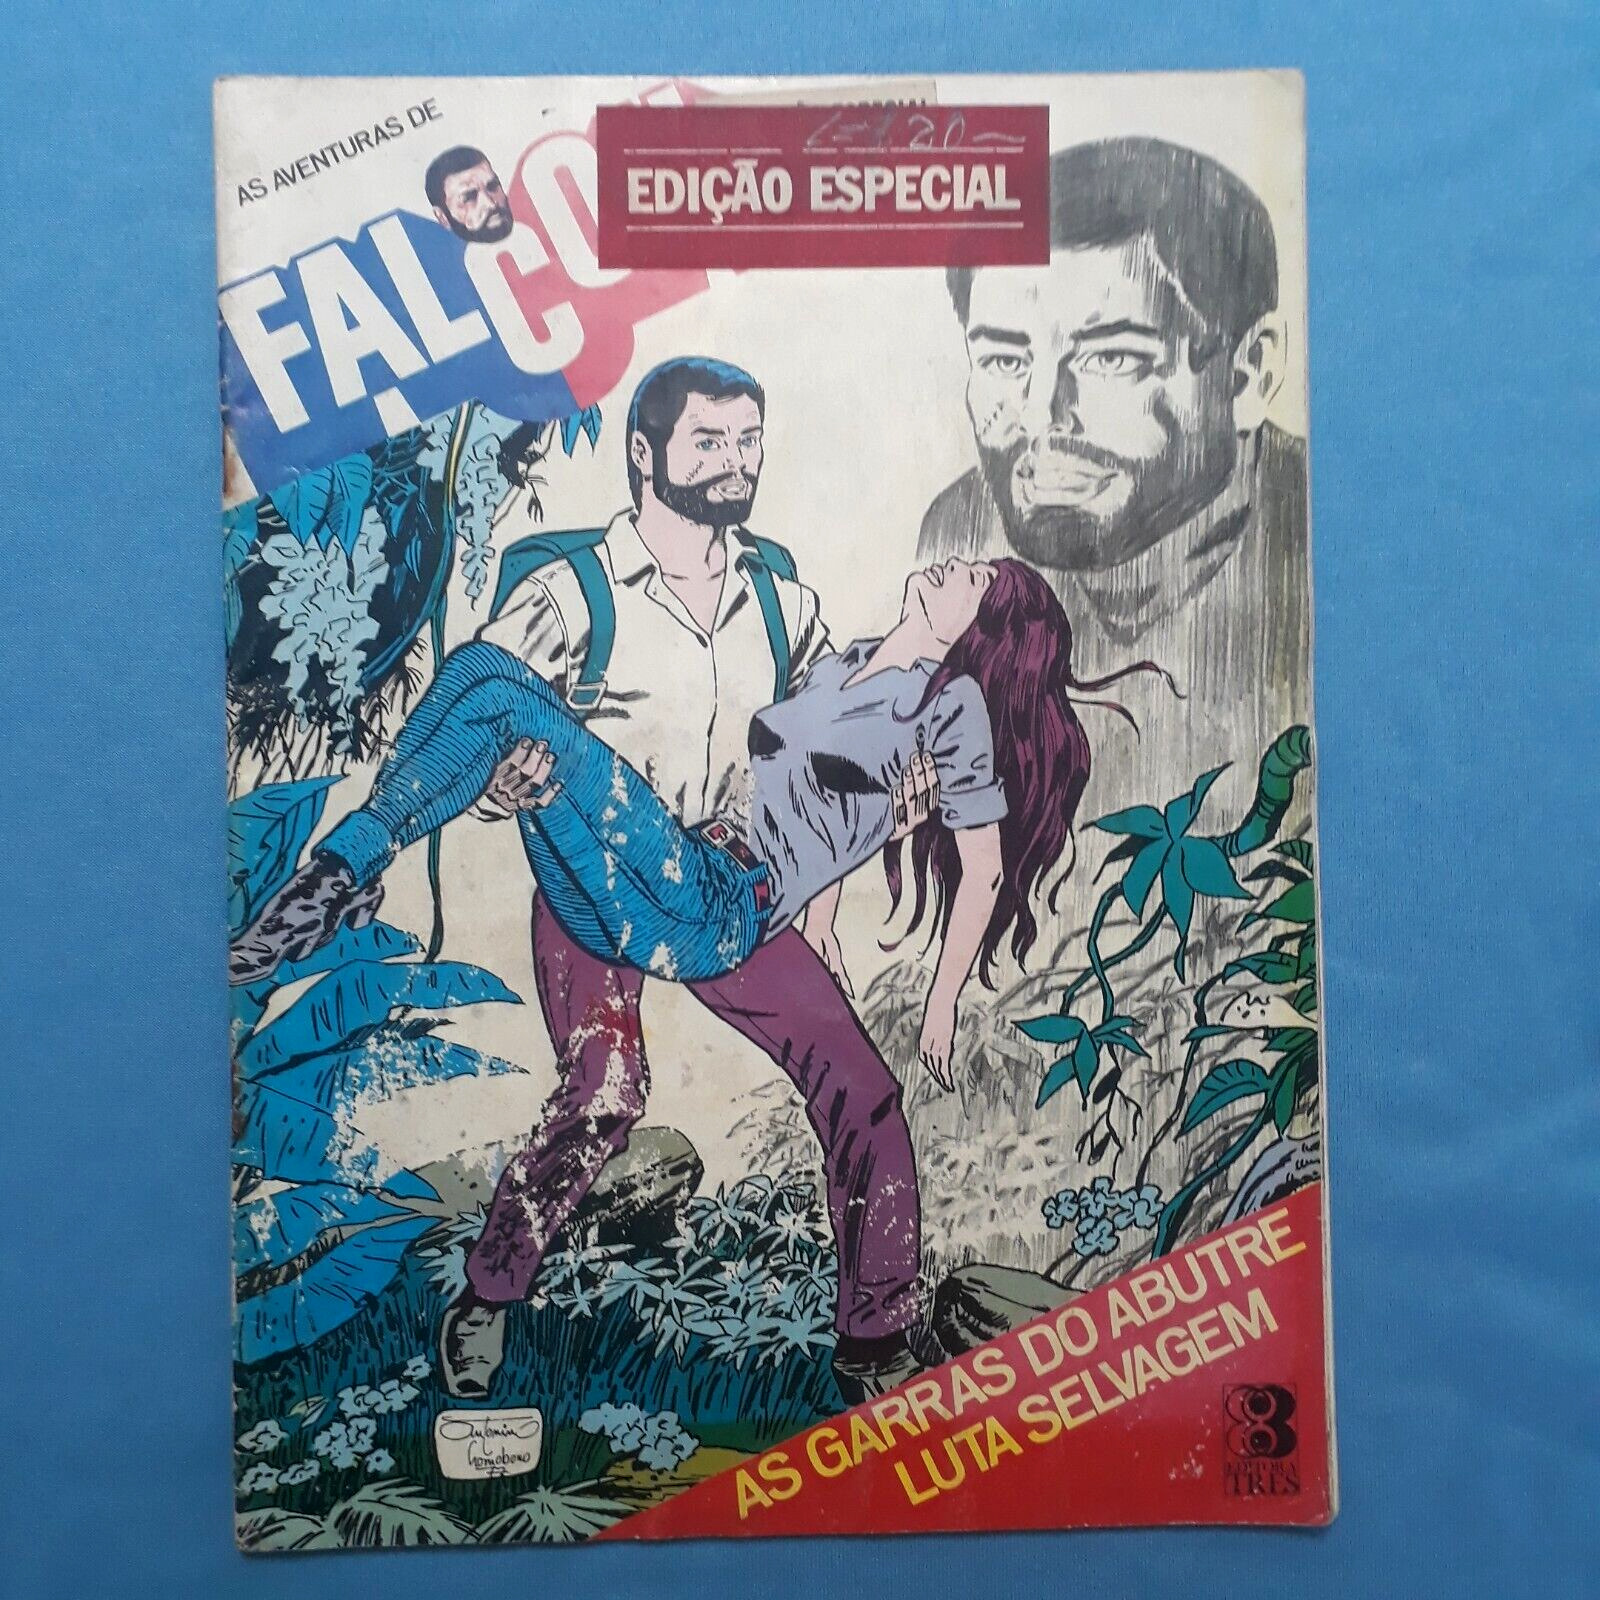 Falcon Gi Joe Comando em acao Comic #1 (Special Ed.) Sep/1977  Brazil Ed. Três